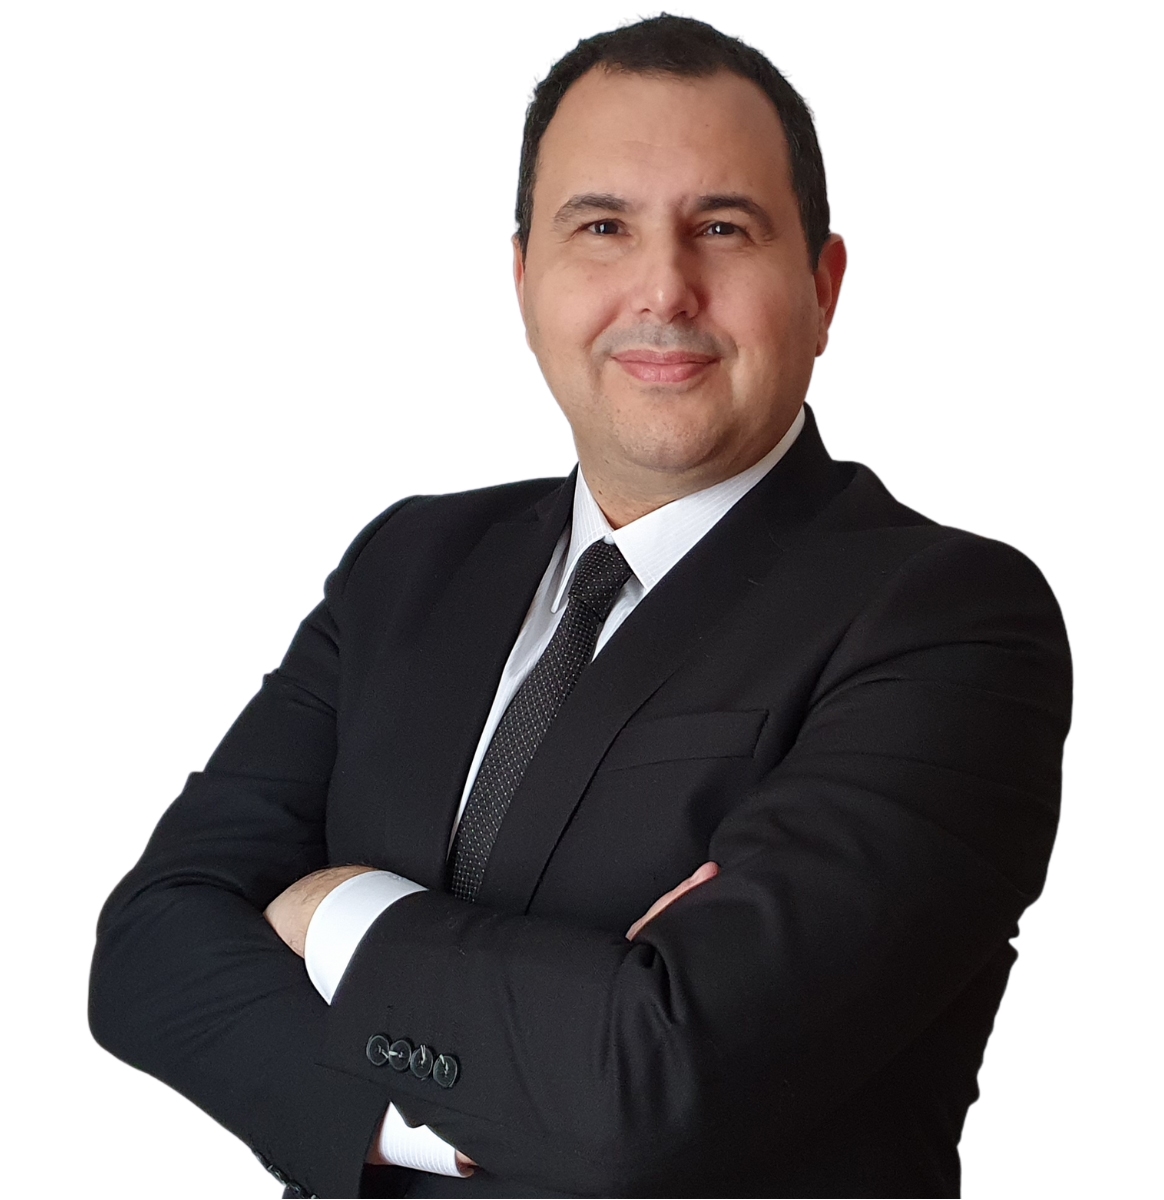 A1 Capital’in yeni genel müdürü Mehmet Serkan Esenpak oldu